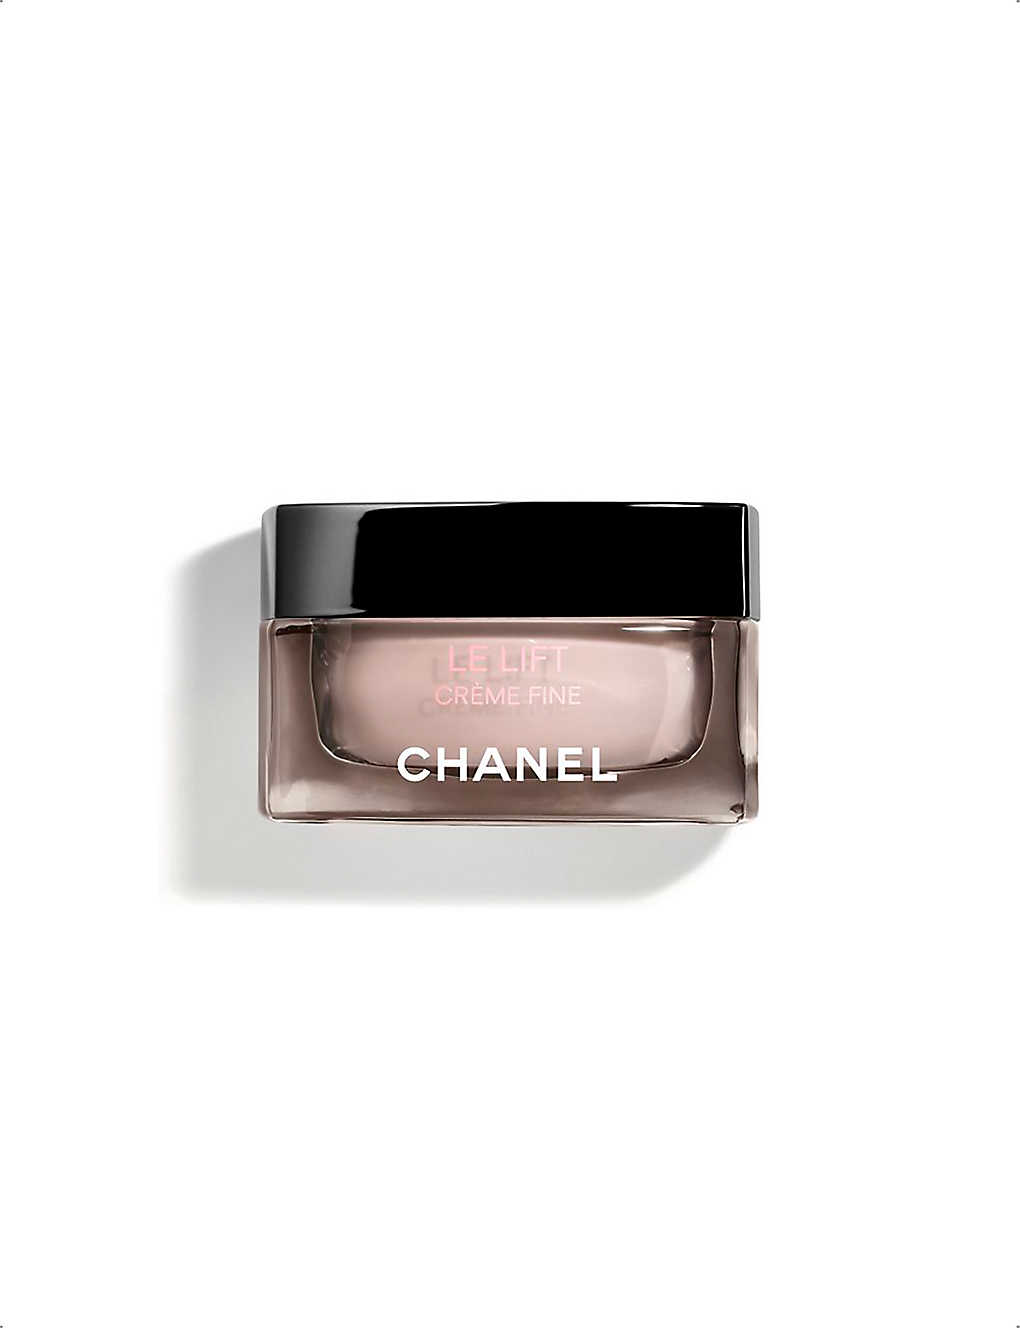 Chanel Le Lift Crème Fine